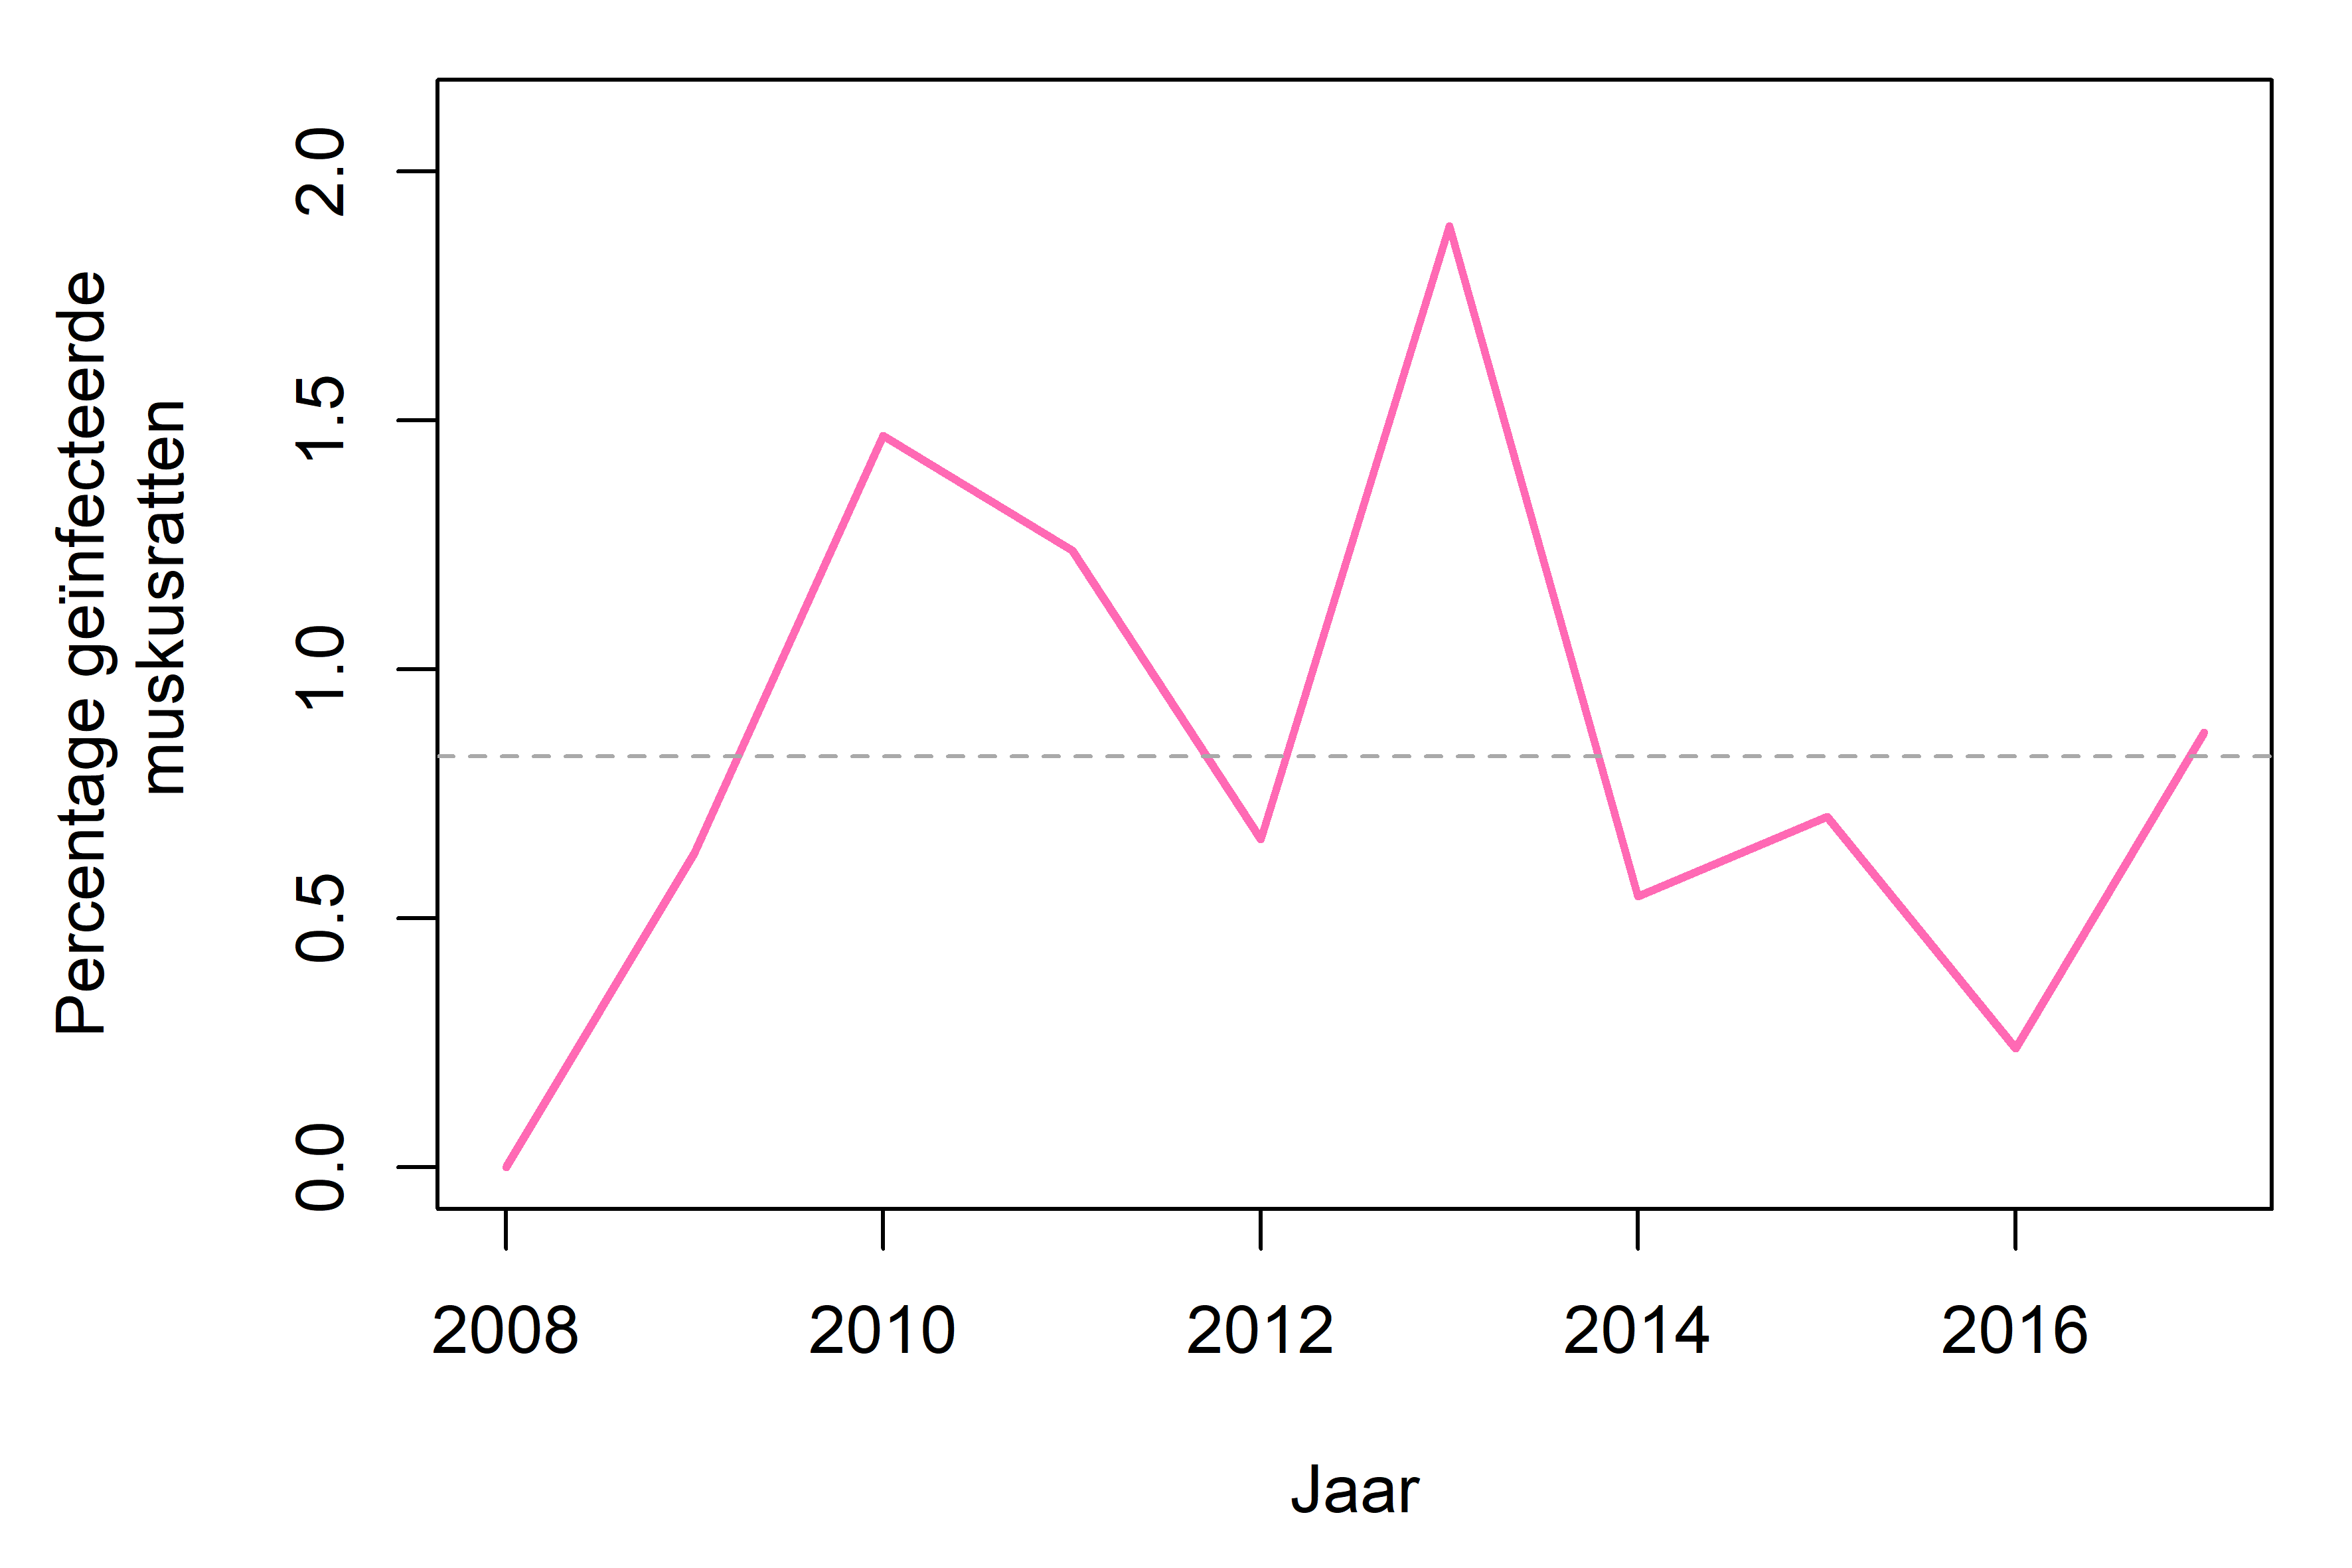 Percentage geïnfecteerde muskusratten in Vlaanderen voor de periode 2008 - 2017. De grijze lijn geeft het gemiddelde percentage voor deze periode aan.